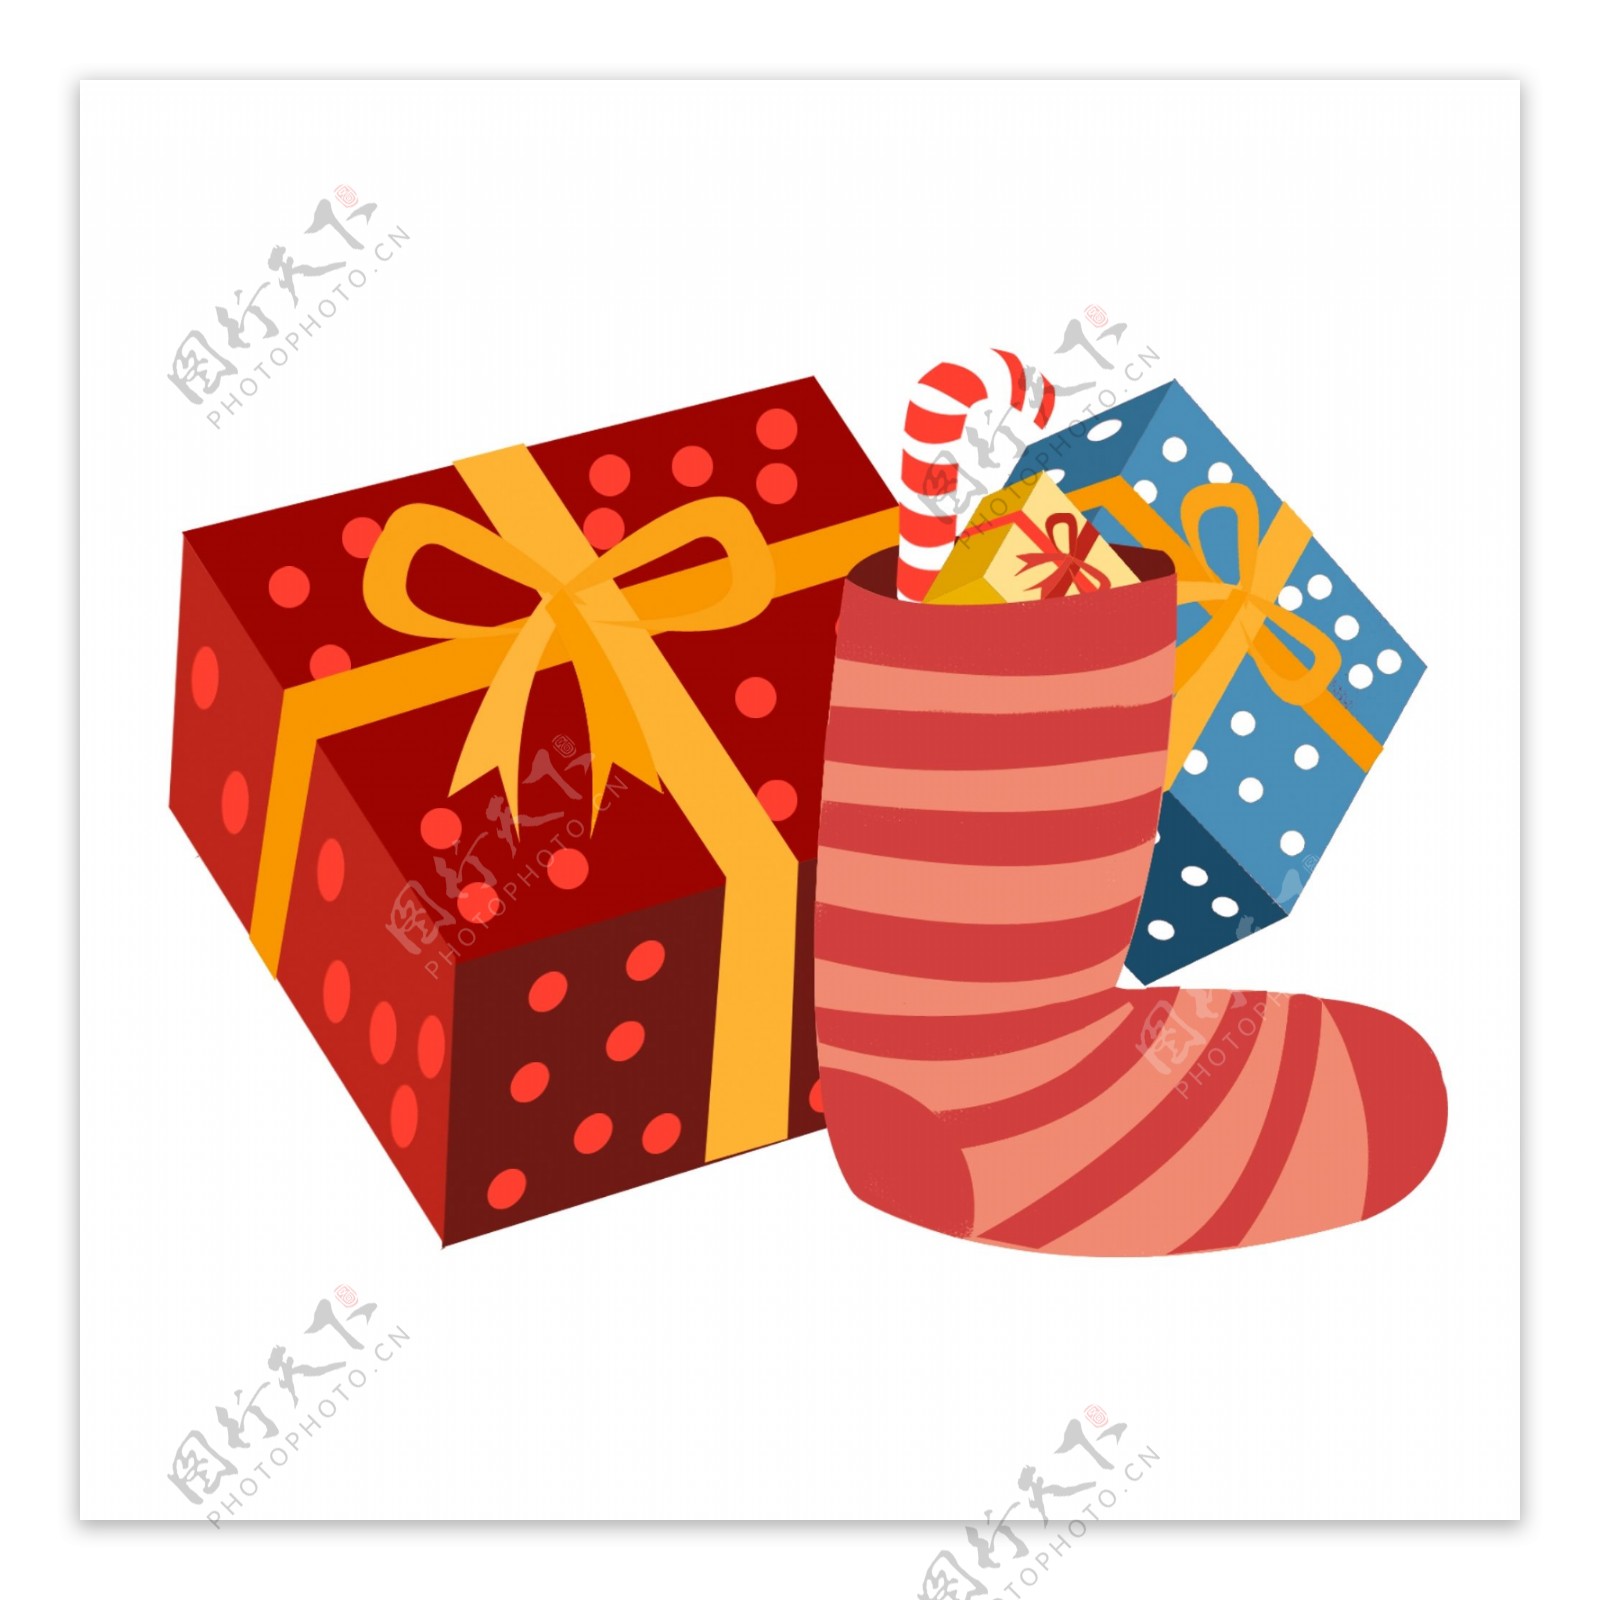 2.5D西方节日圣诞节的礼物盒和圣诞袜子元素